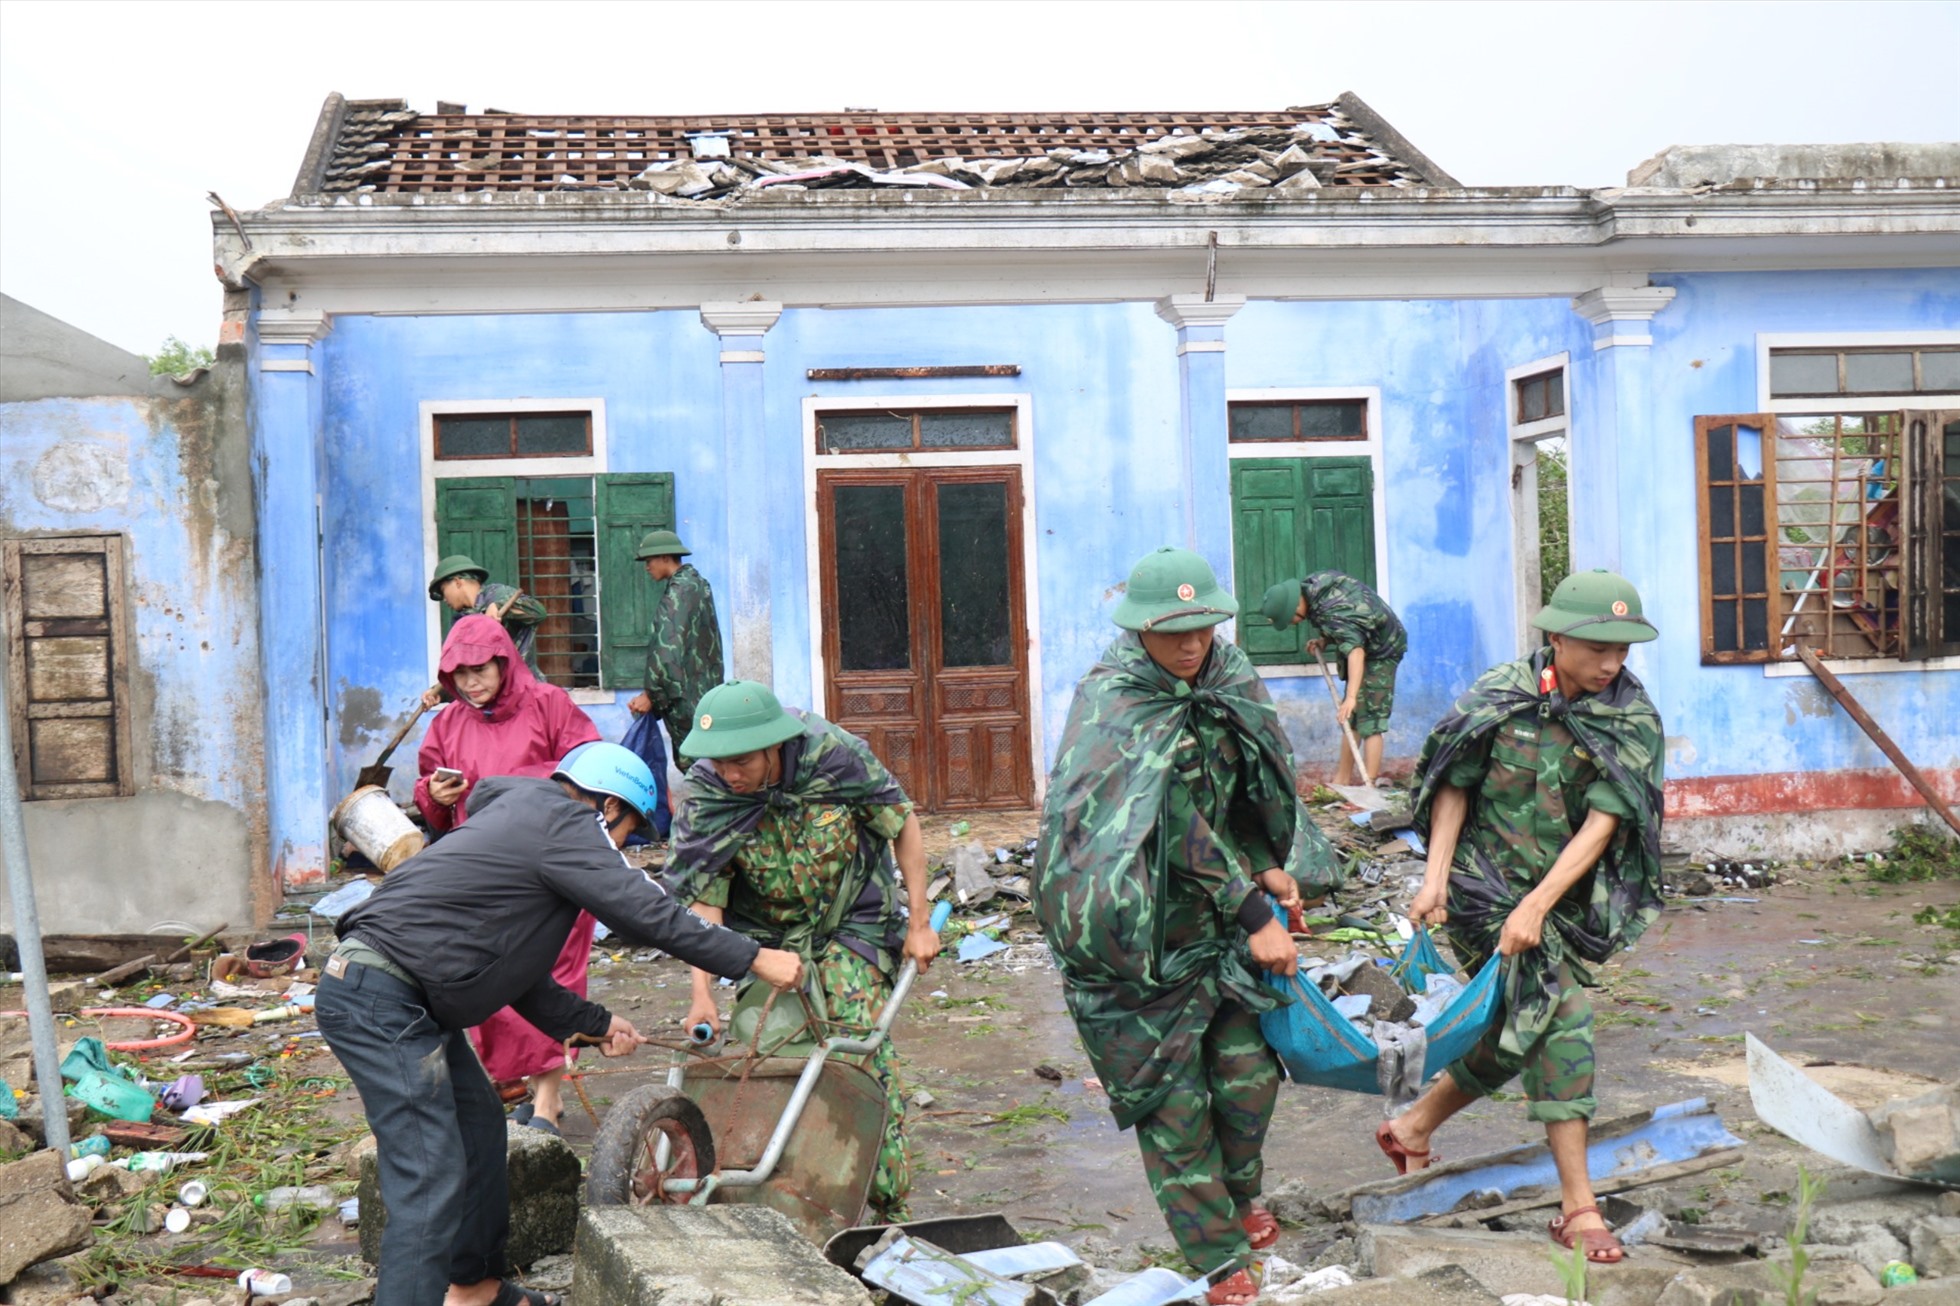 Hiện nay, Bộ chỉ huy BĐBP tỉnh Thừa Thiên Huế đang huy động 182 cán bộ chiến sĩ và 6 phương tiện  cơ động về các địa bàn phối hợp cùng chính quyền địa phương và các lực lượng hỗ trợ nhân dân khắc phục hậu quả do bãn số 4 gây ra.